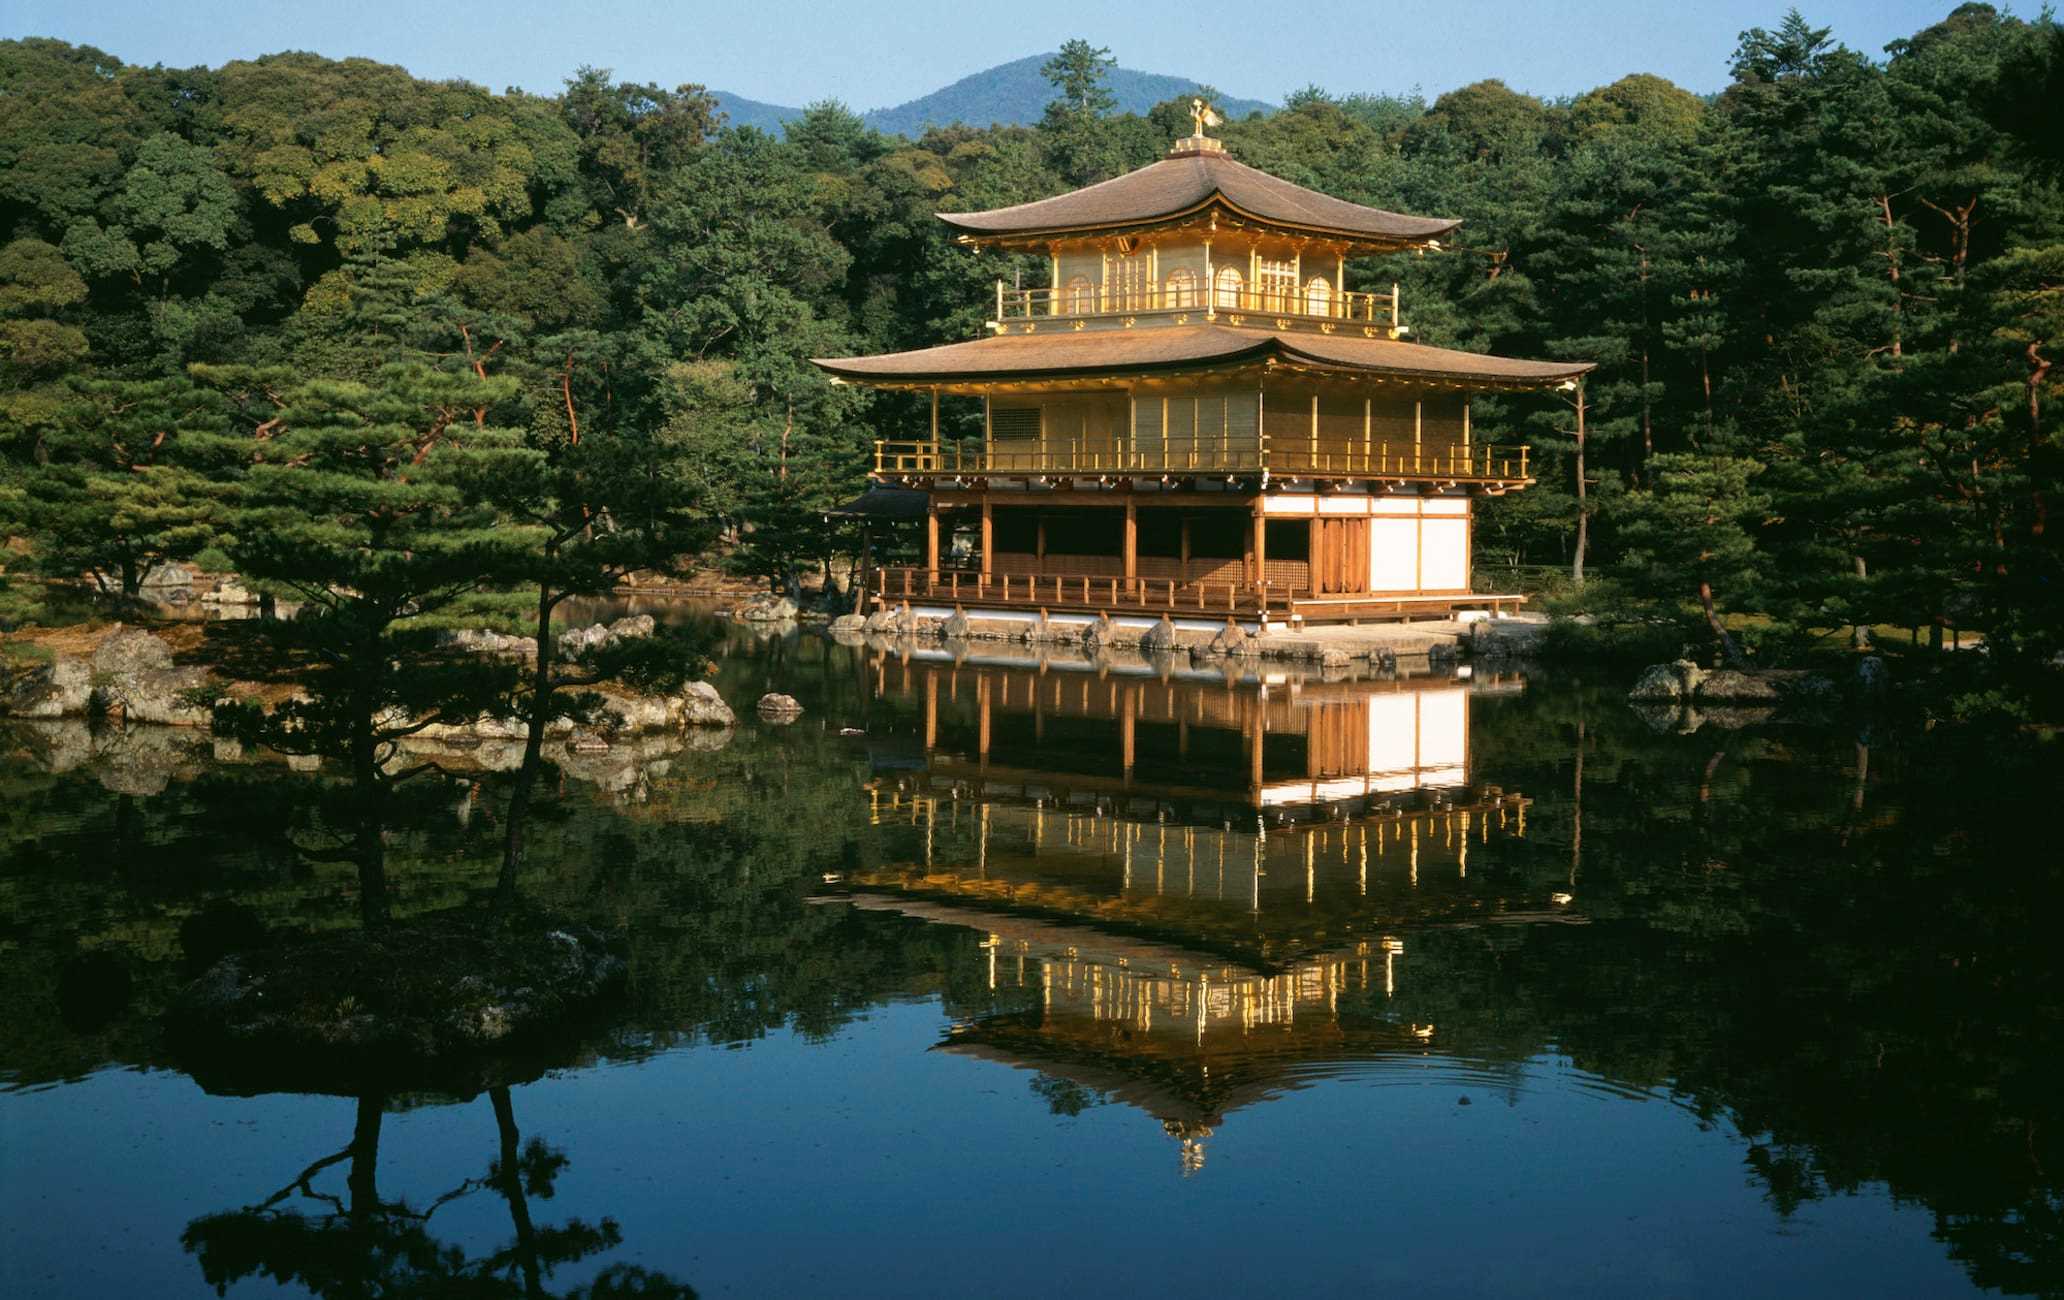 18-astounding-facts-about-kinkaku-ji-golden-pavilion